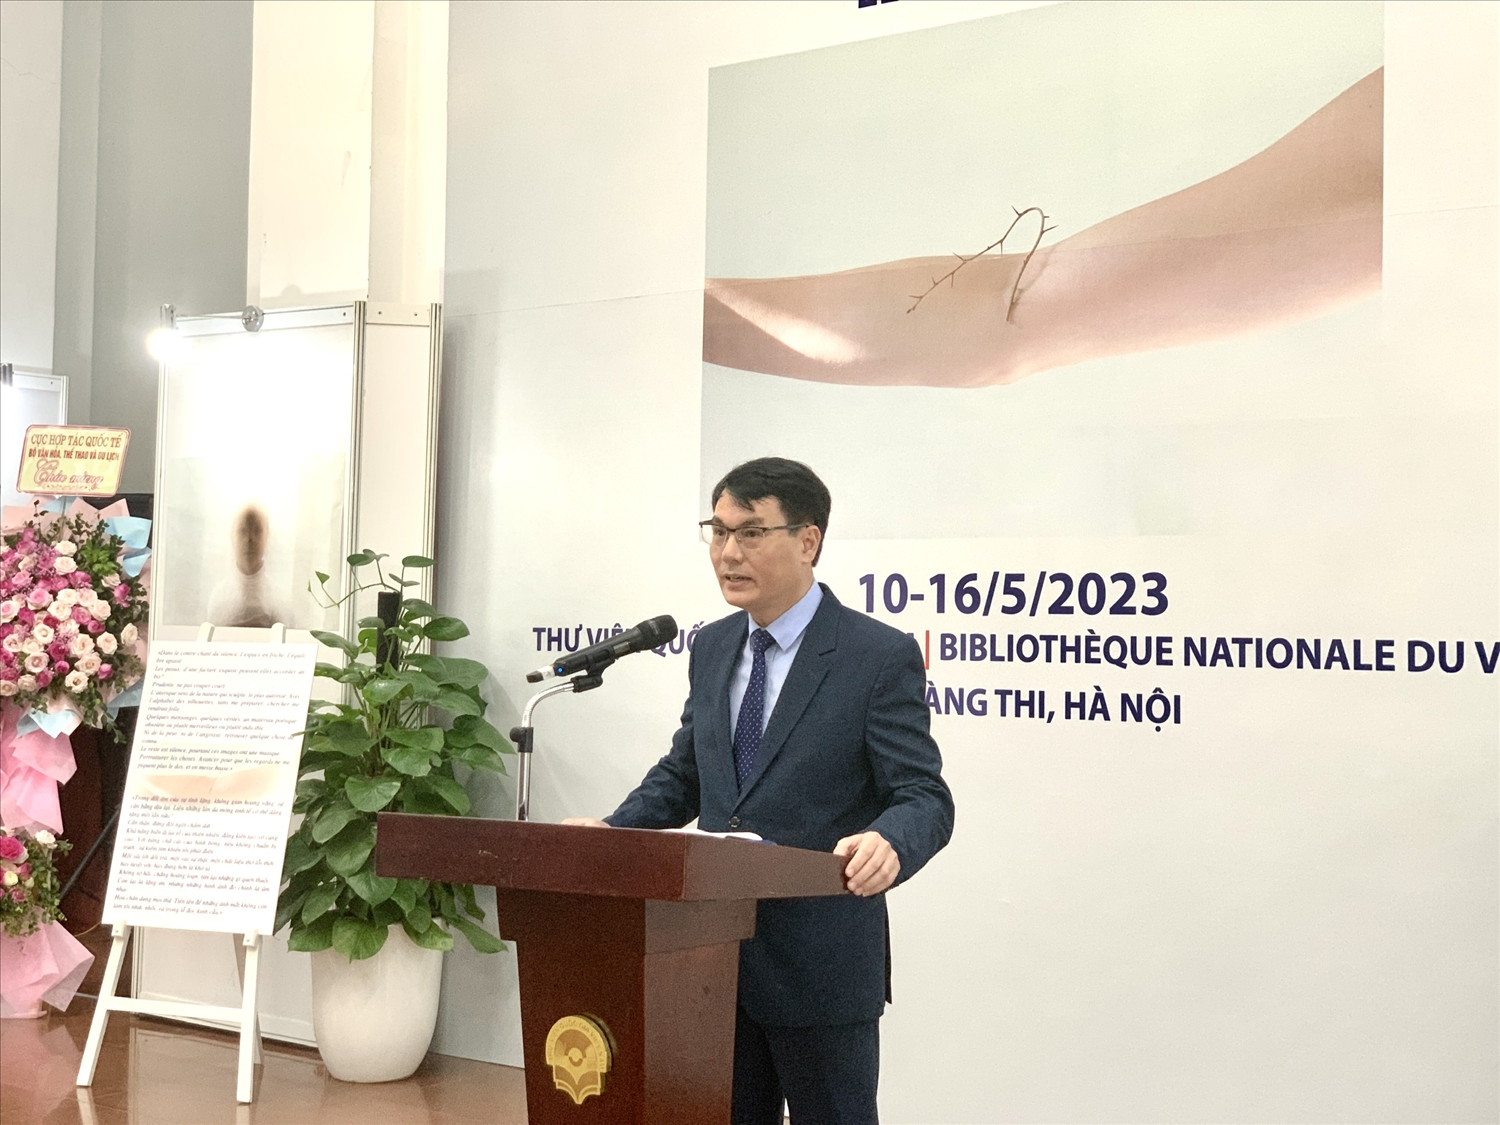 Ông Nguyễn Xuân Dũng, Quyền Giám đốc Thư viện Quốc gia Việt Nam phát biểu tại Lễ khai mạc